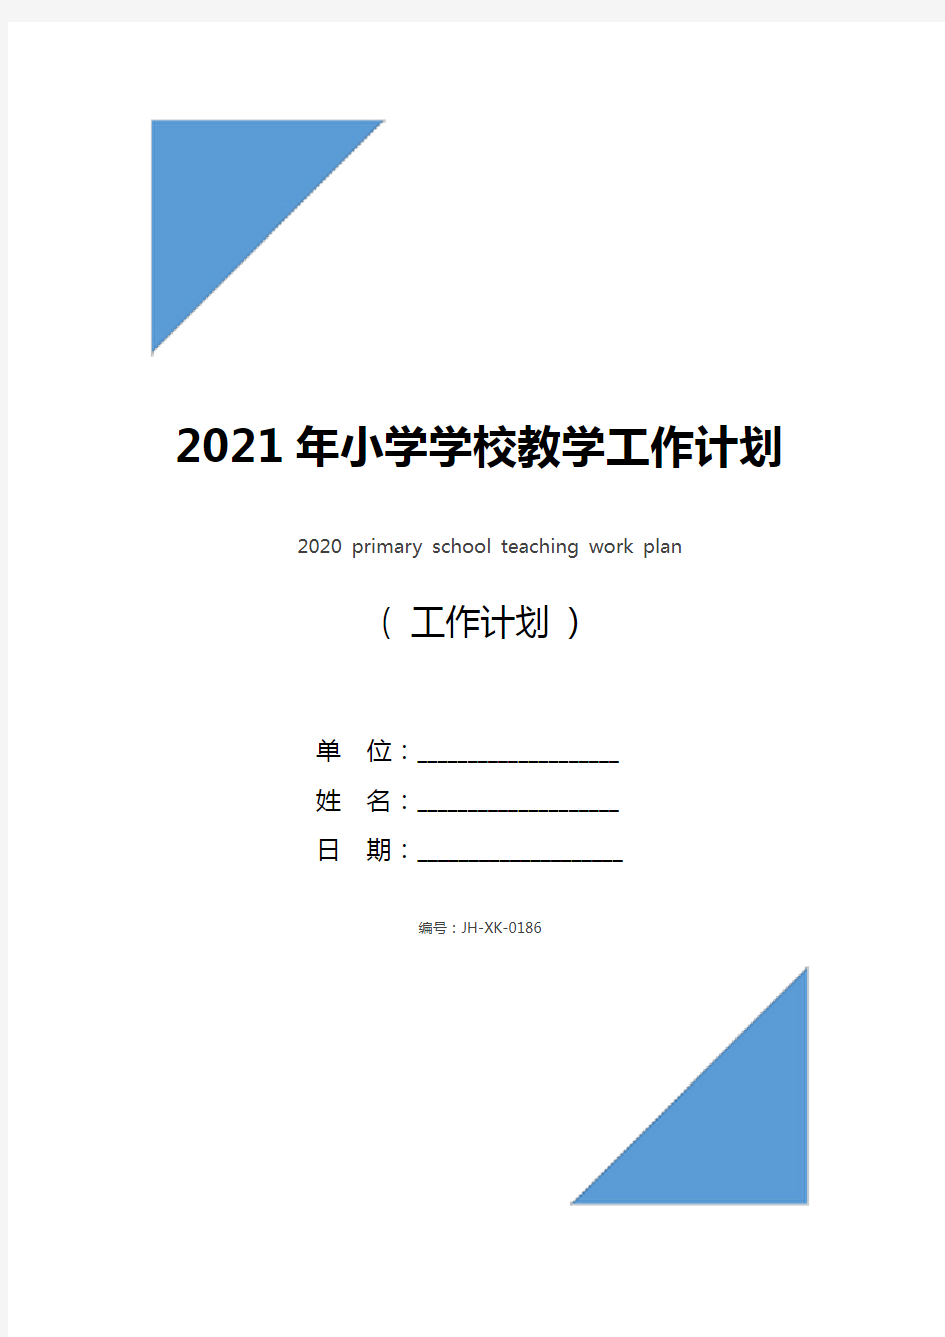 2021年小学学校教学工作计划(新编版)